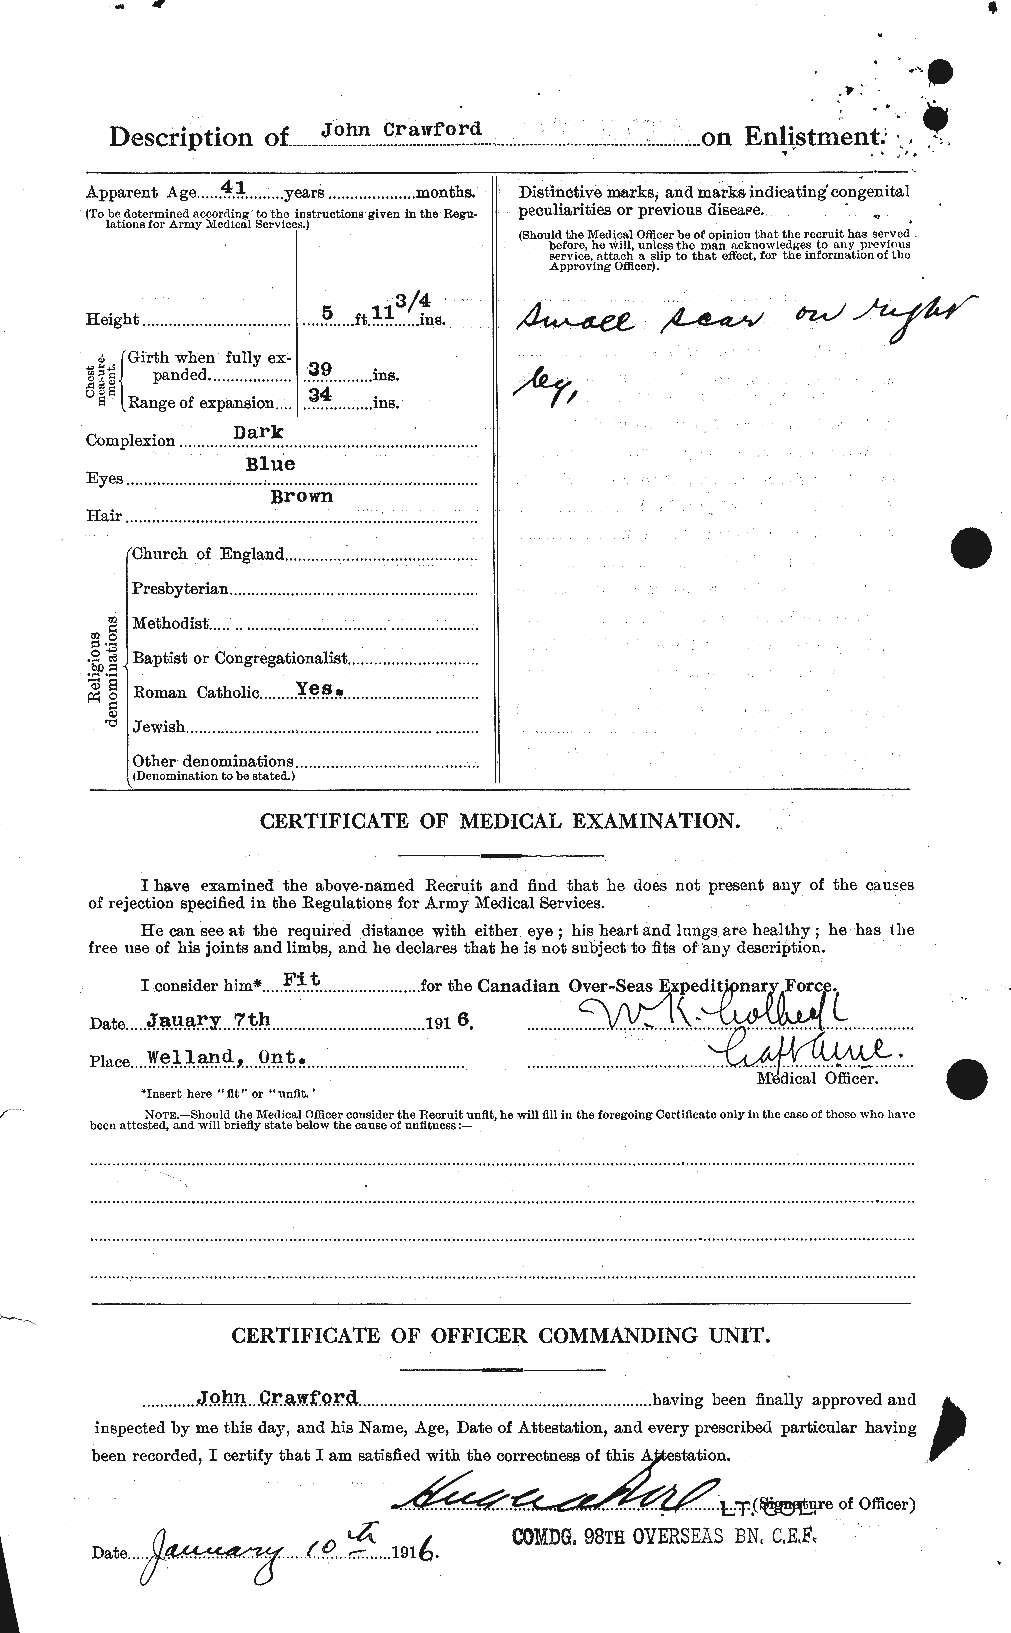 Dossiers du Personnel de la Première Guerre mondiale - CEC 062446b